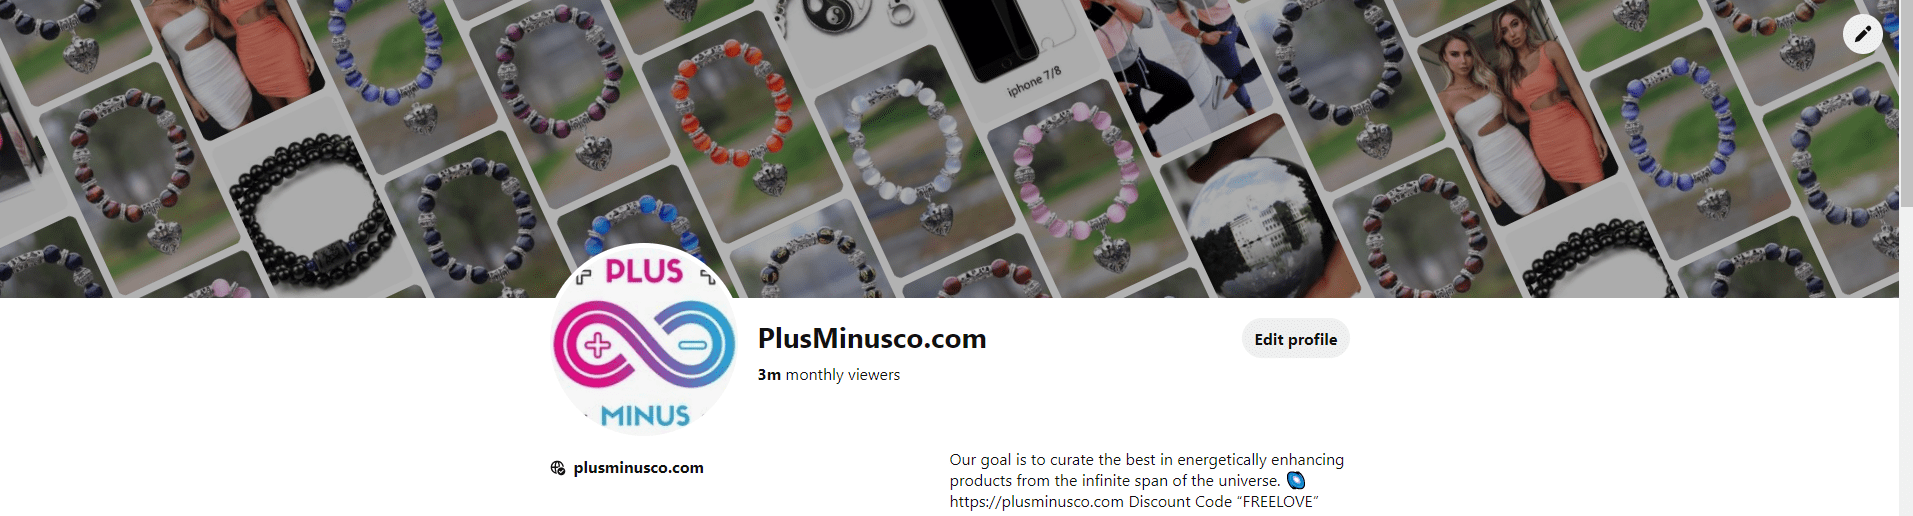 الأساور - plusminusco.com